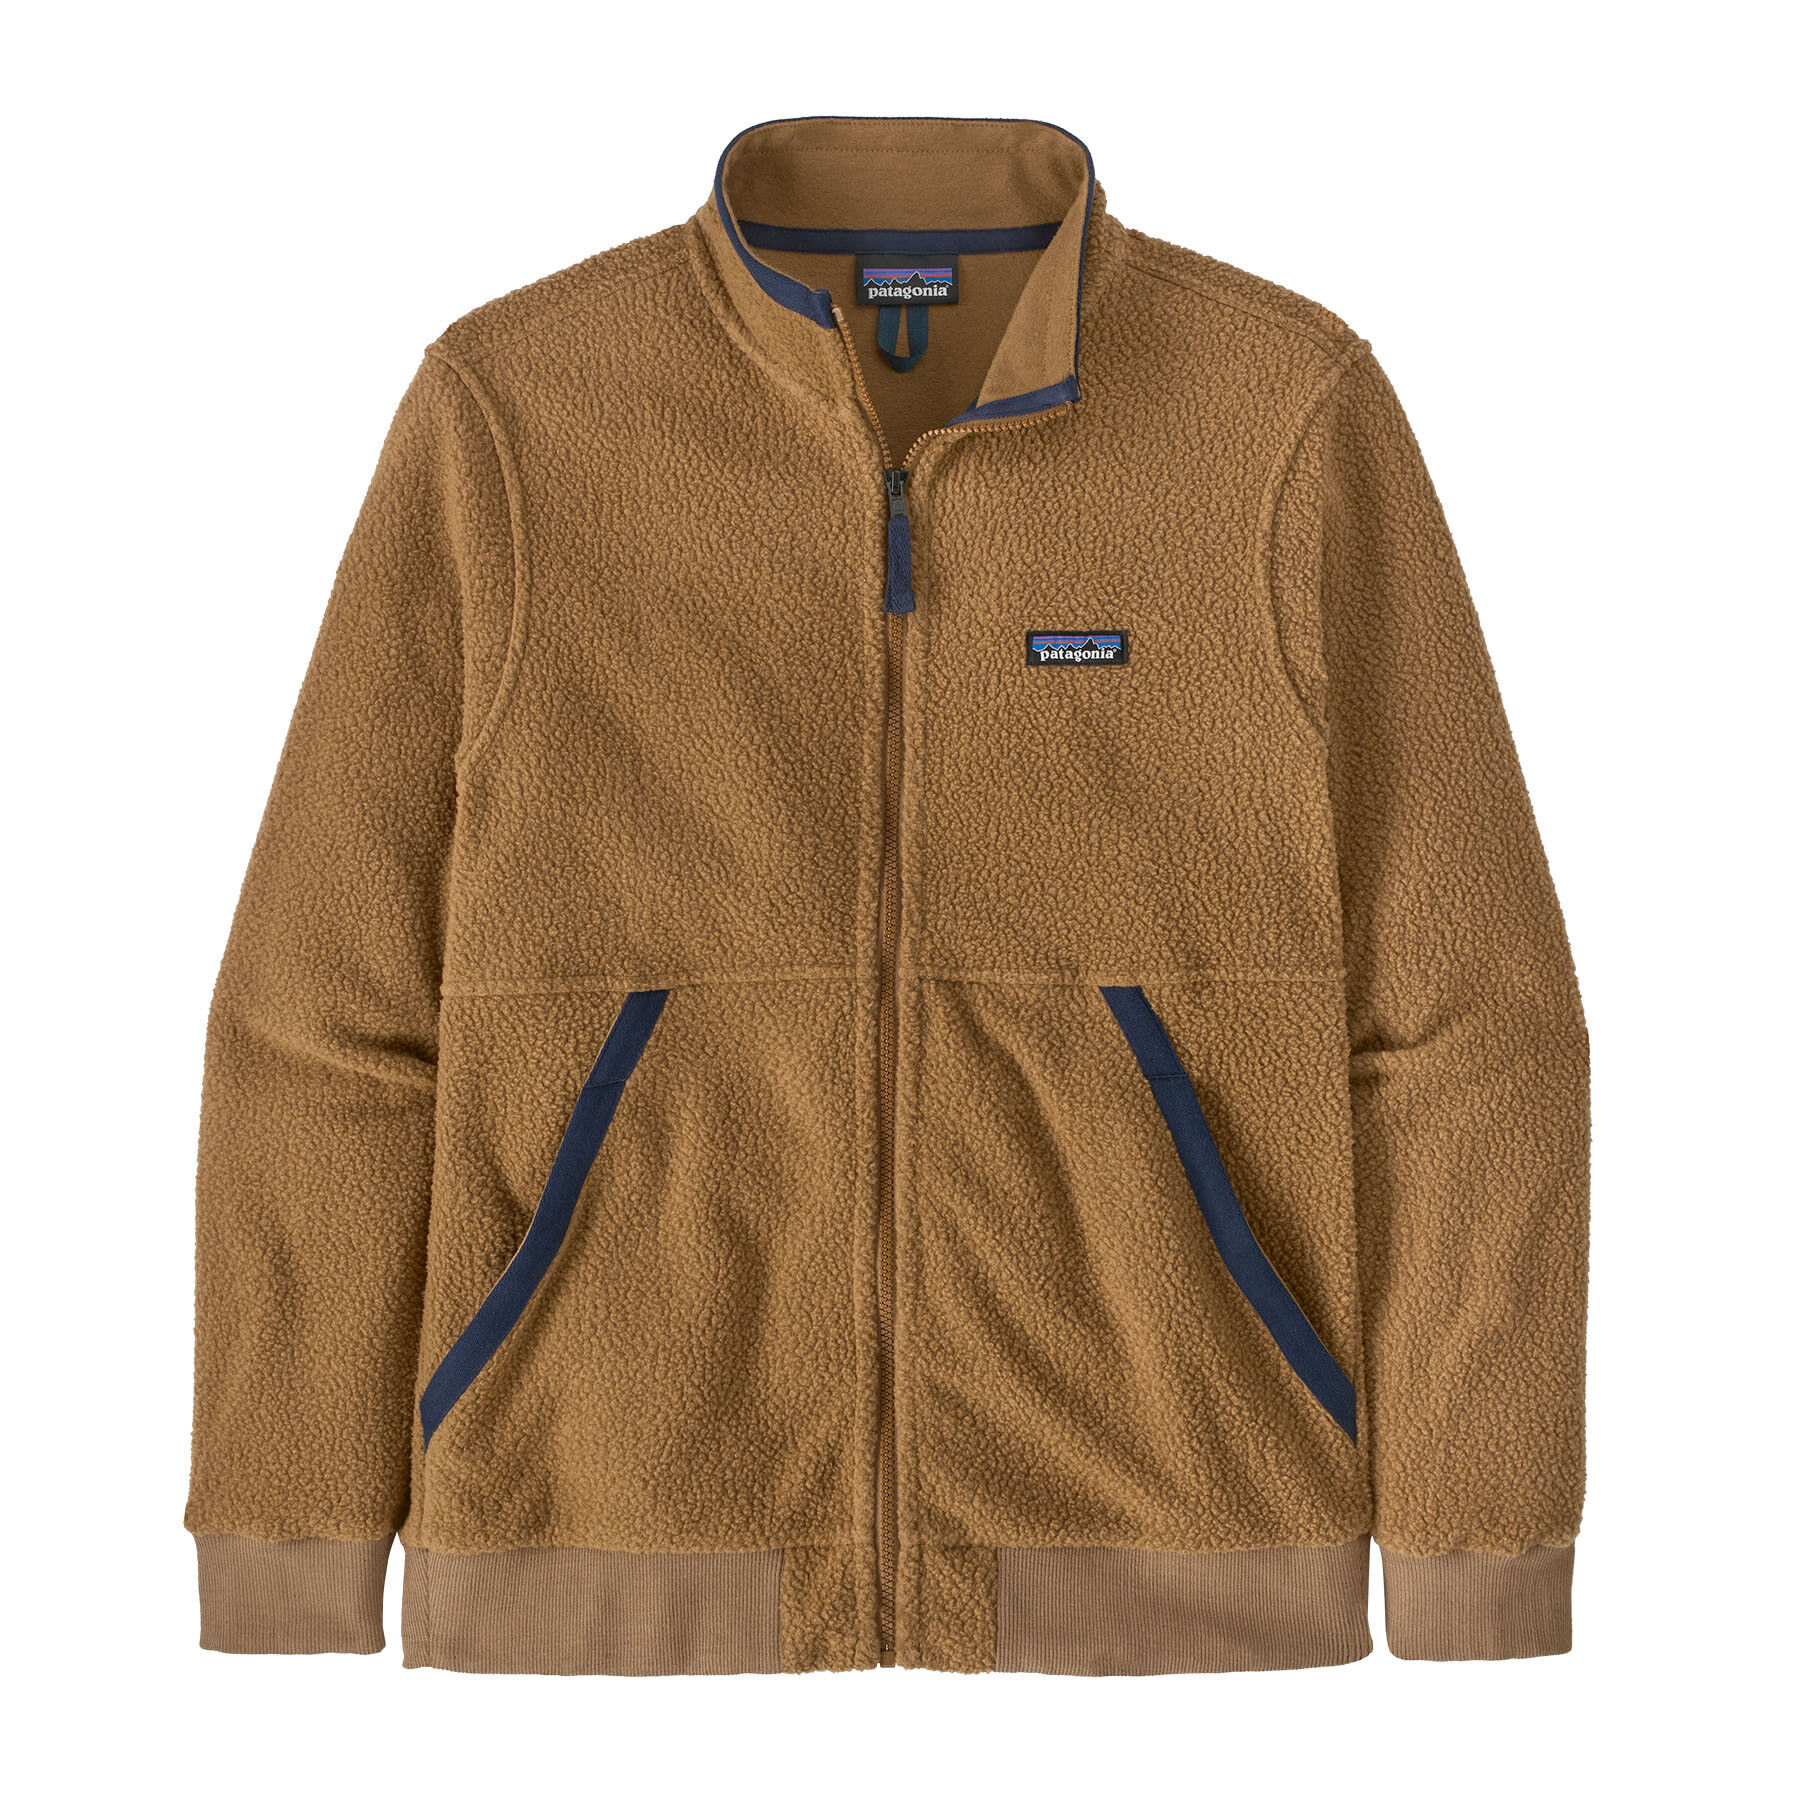 Patagonia Shearling Jacket - Fleece jacket - Men's